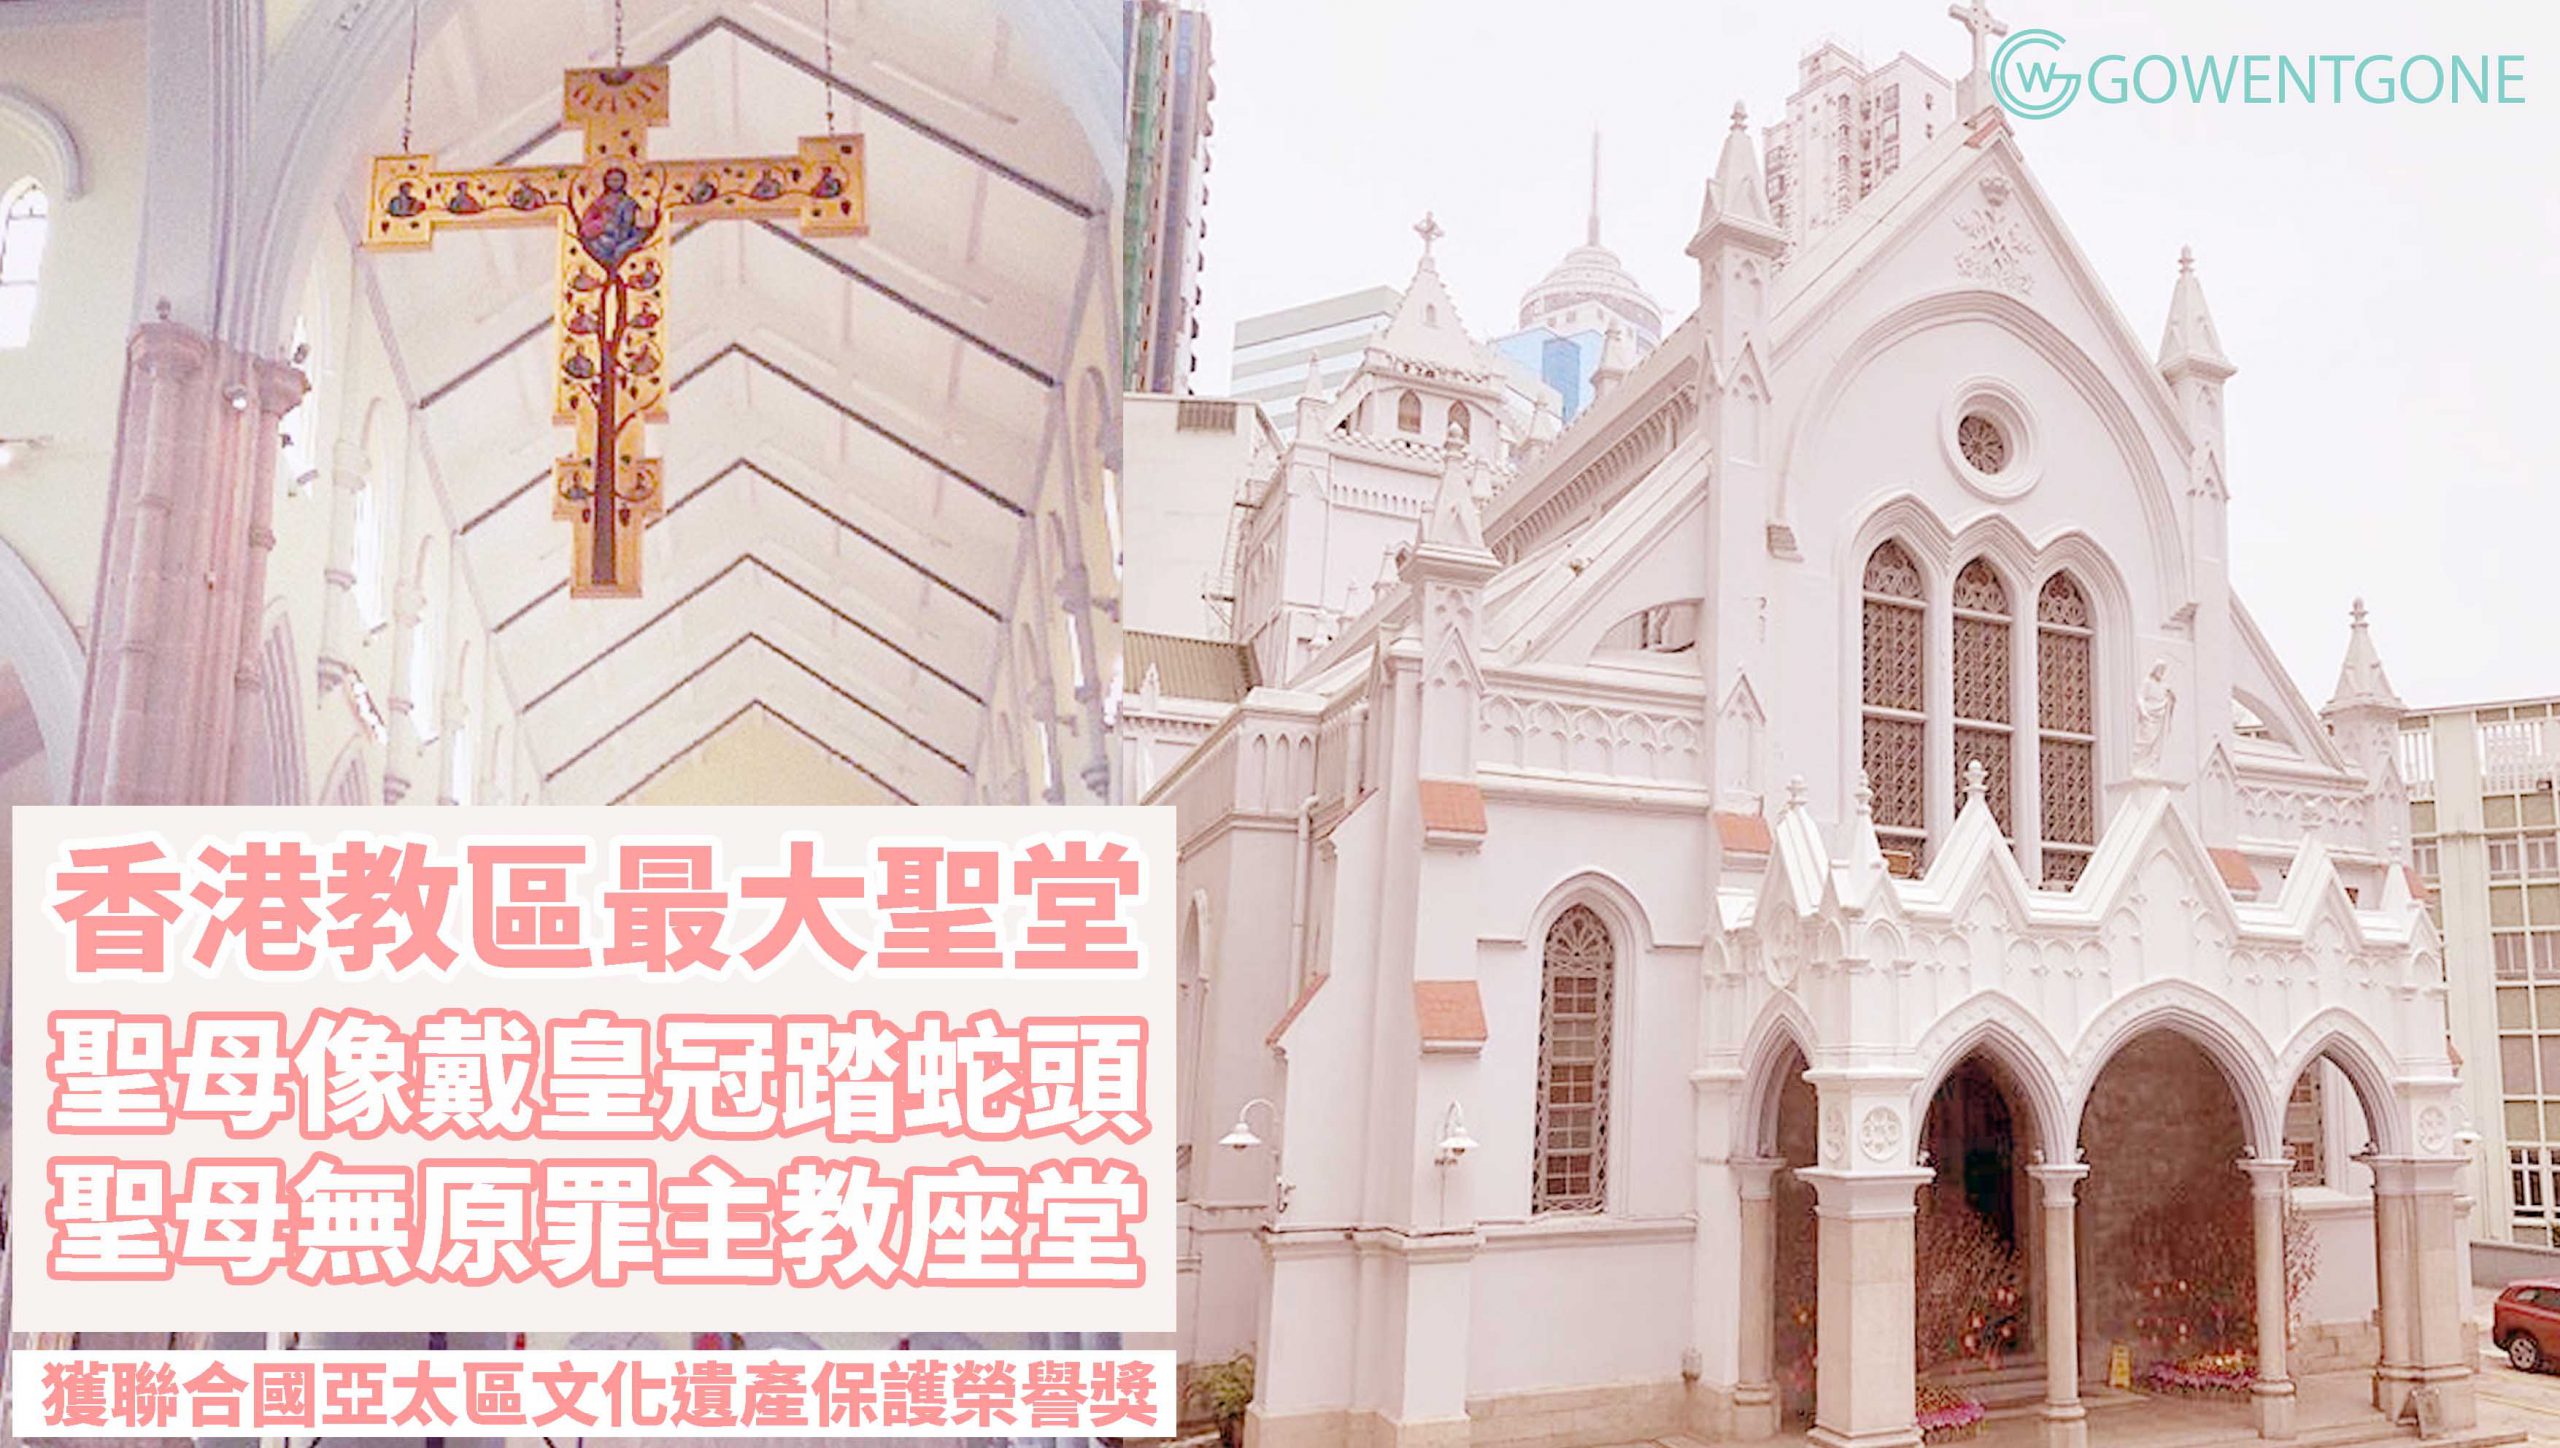 香港天主教聖母無原罪主教座堂〡聖母像頭戴皇冠，腳踏蛇頭！獲聯合國教科文組織亞太區文化遺產保護獎的榮譽獎！